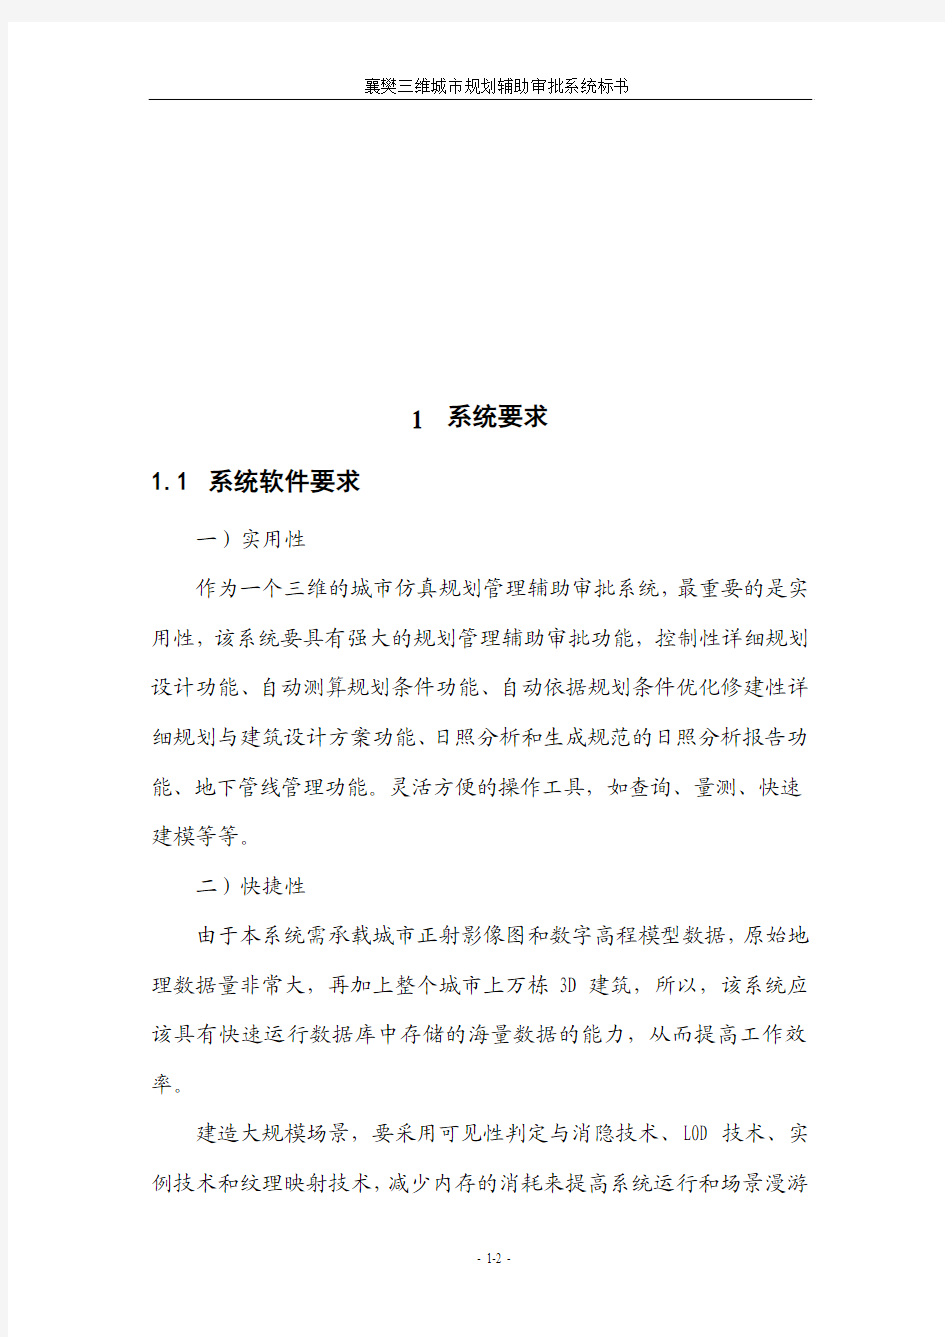 襄樊三维城市规划管理辅助审批系统建设方案